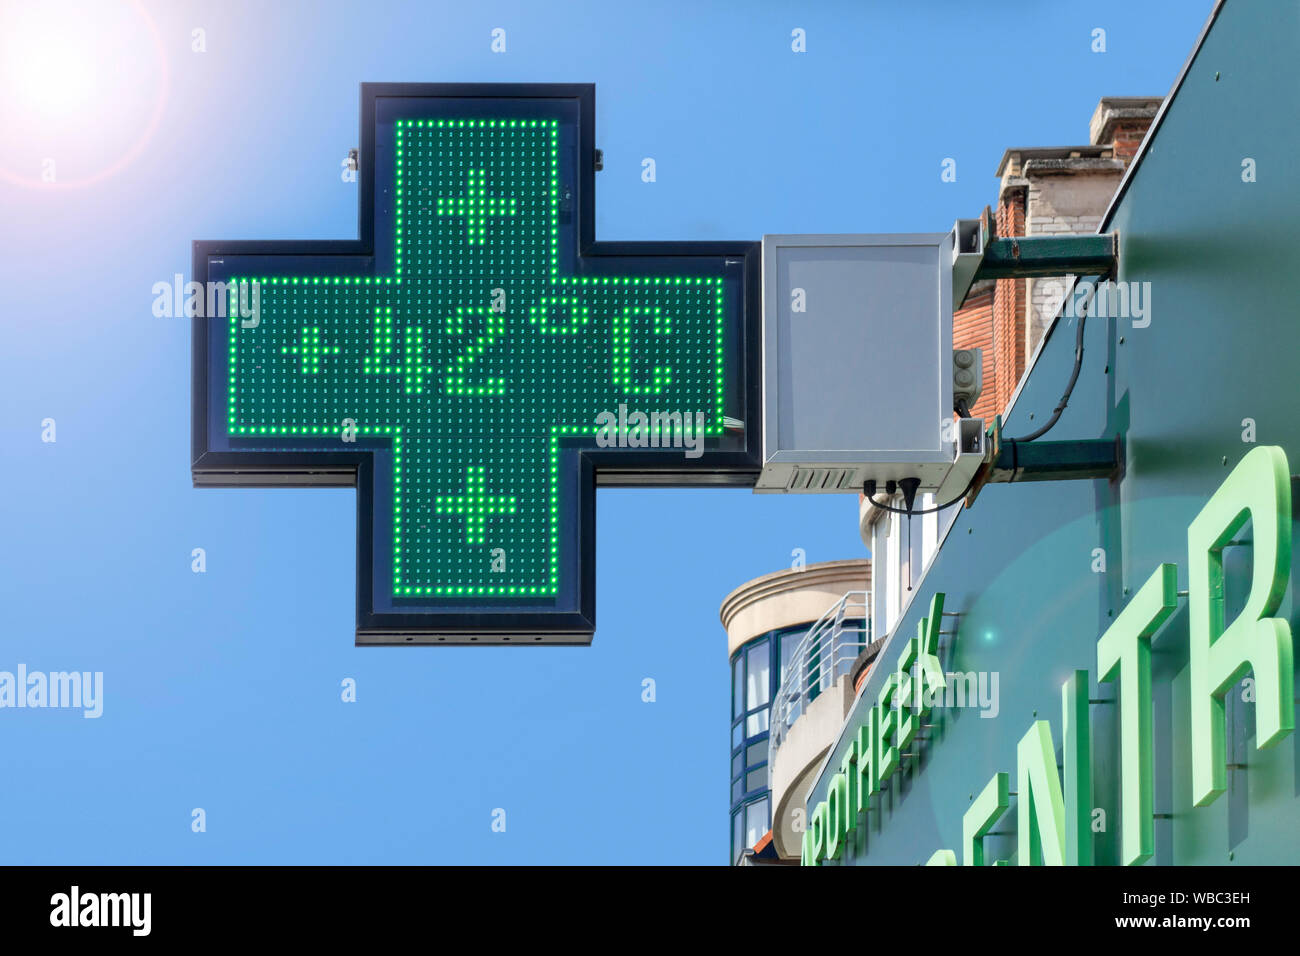 Termómetro en farmacia verde la señal de la pantalla se muestra extremadamente caliente temperatura de 42 grados Celsius durante la canícula / ola de calor en verano en Bélgica Foto de stock